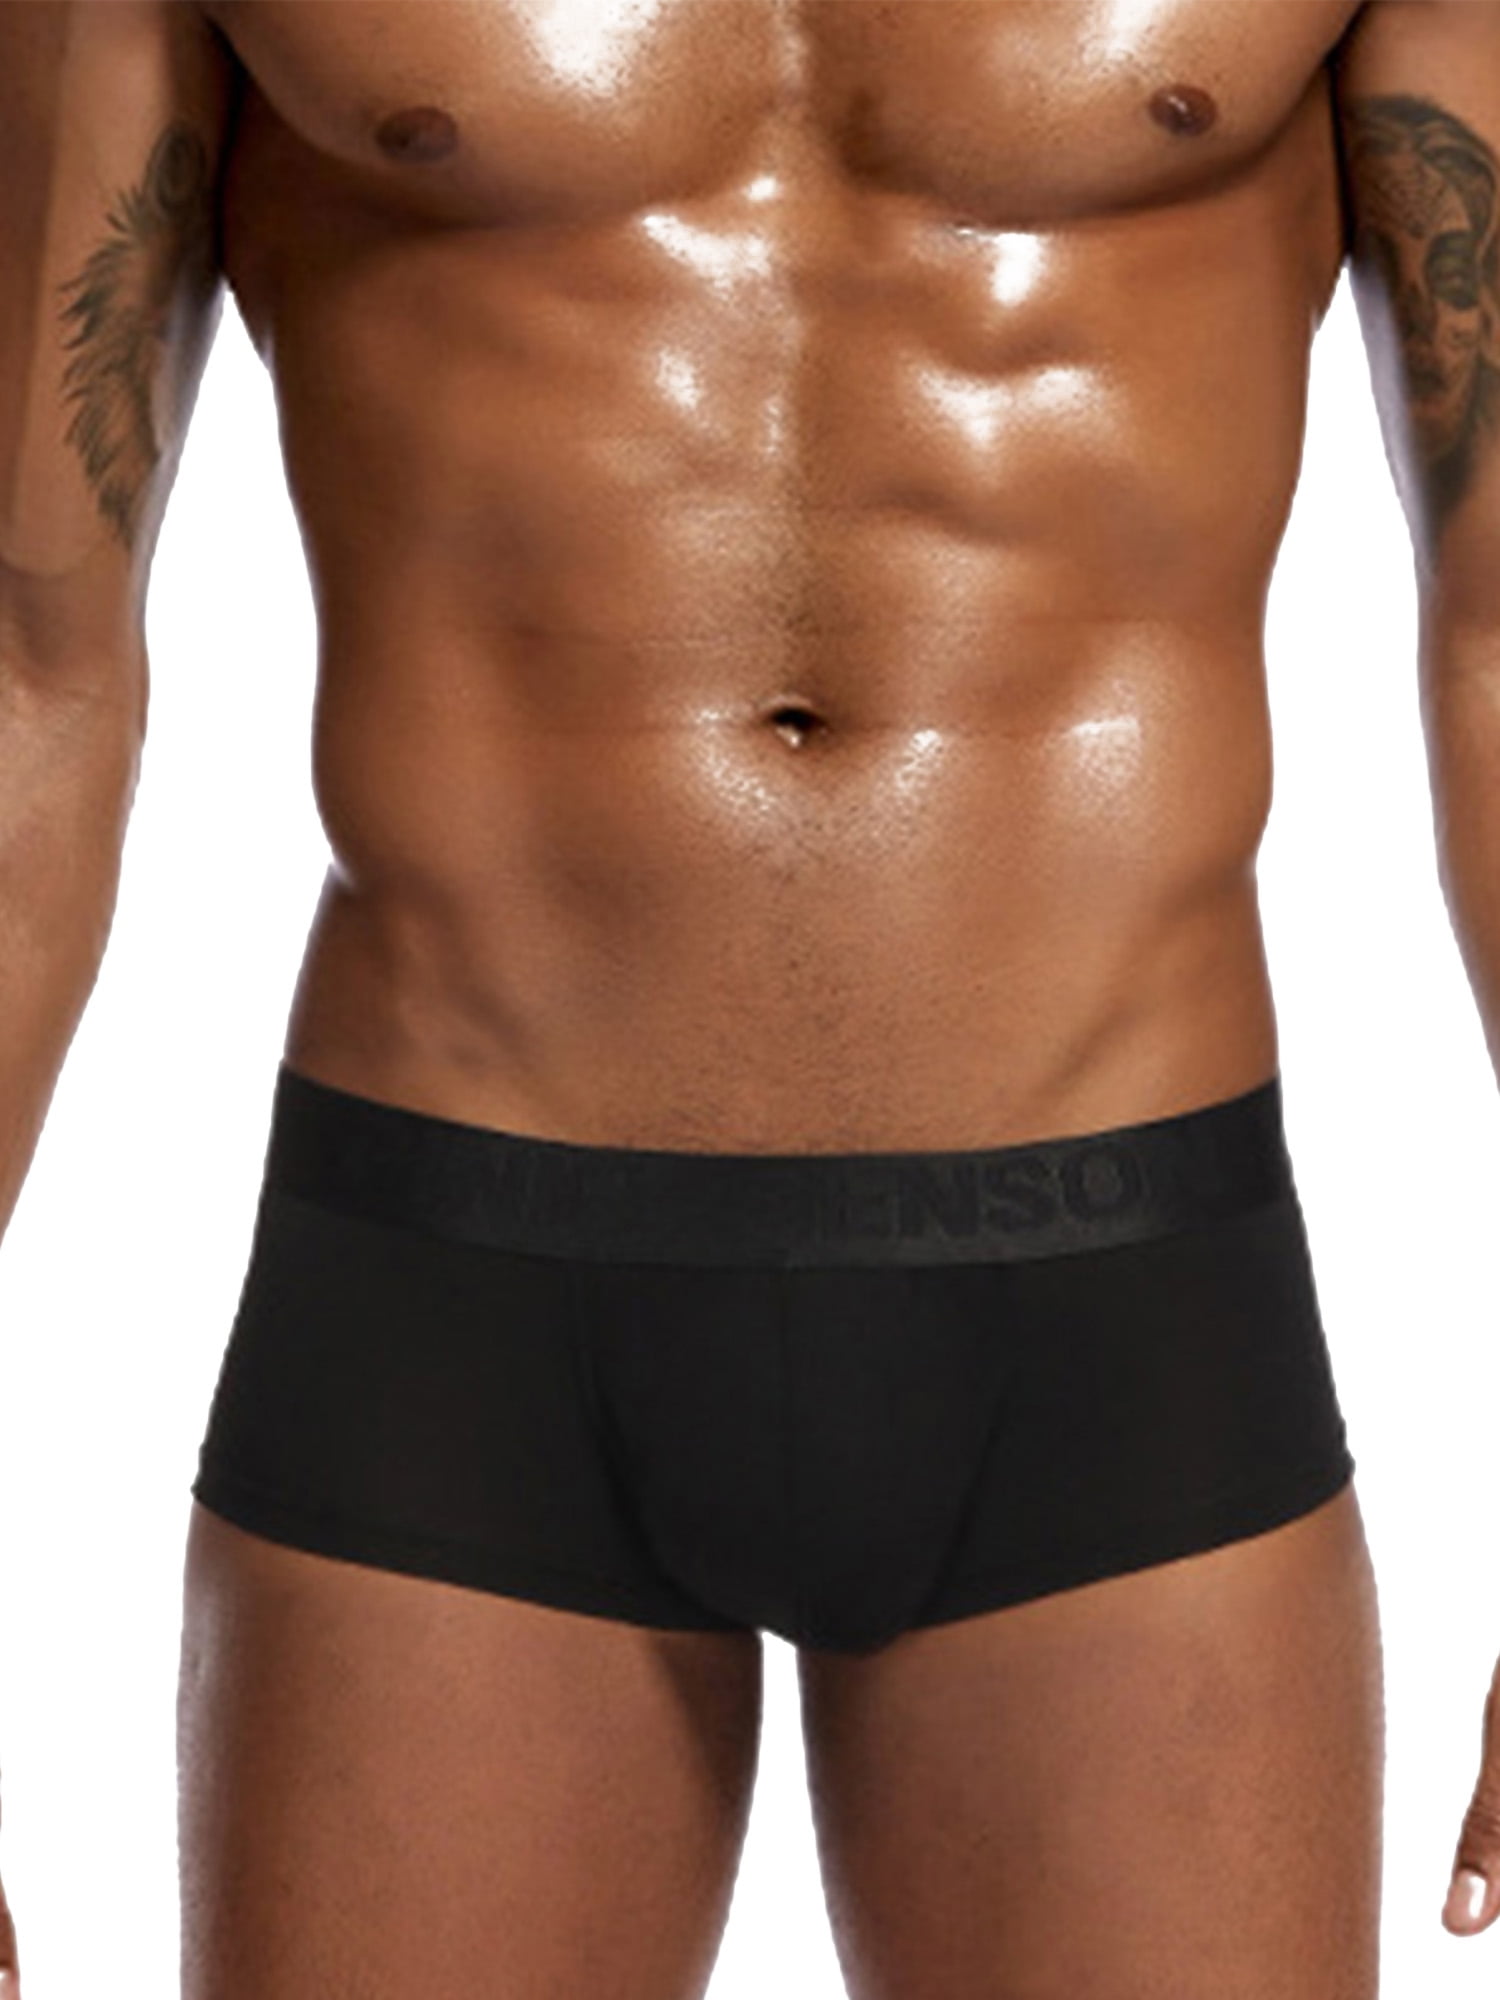 Mens Low-rise Boxers Briefs Mini Bottoms Bulge Pouch Underwear Trunks Shorts